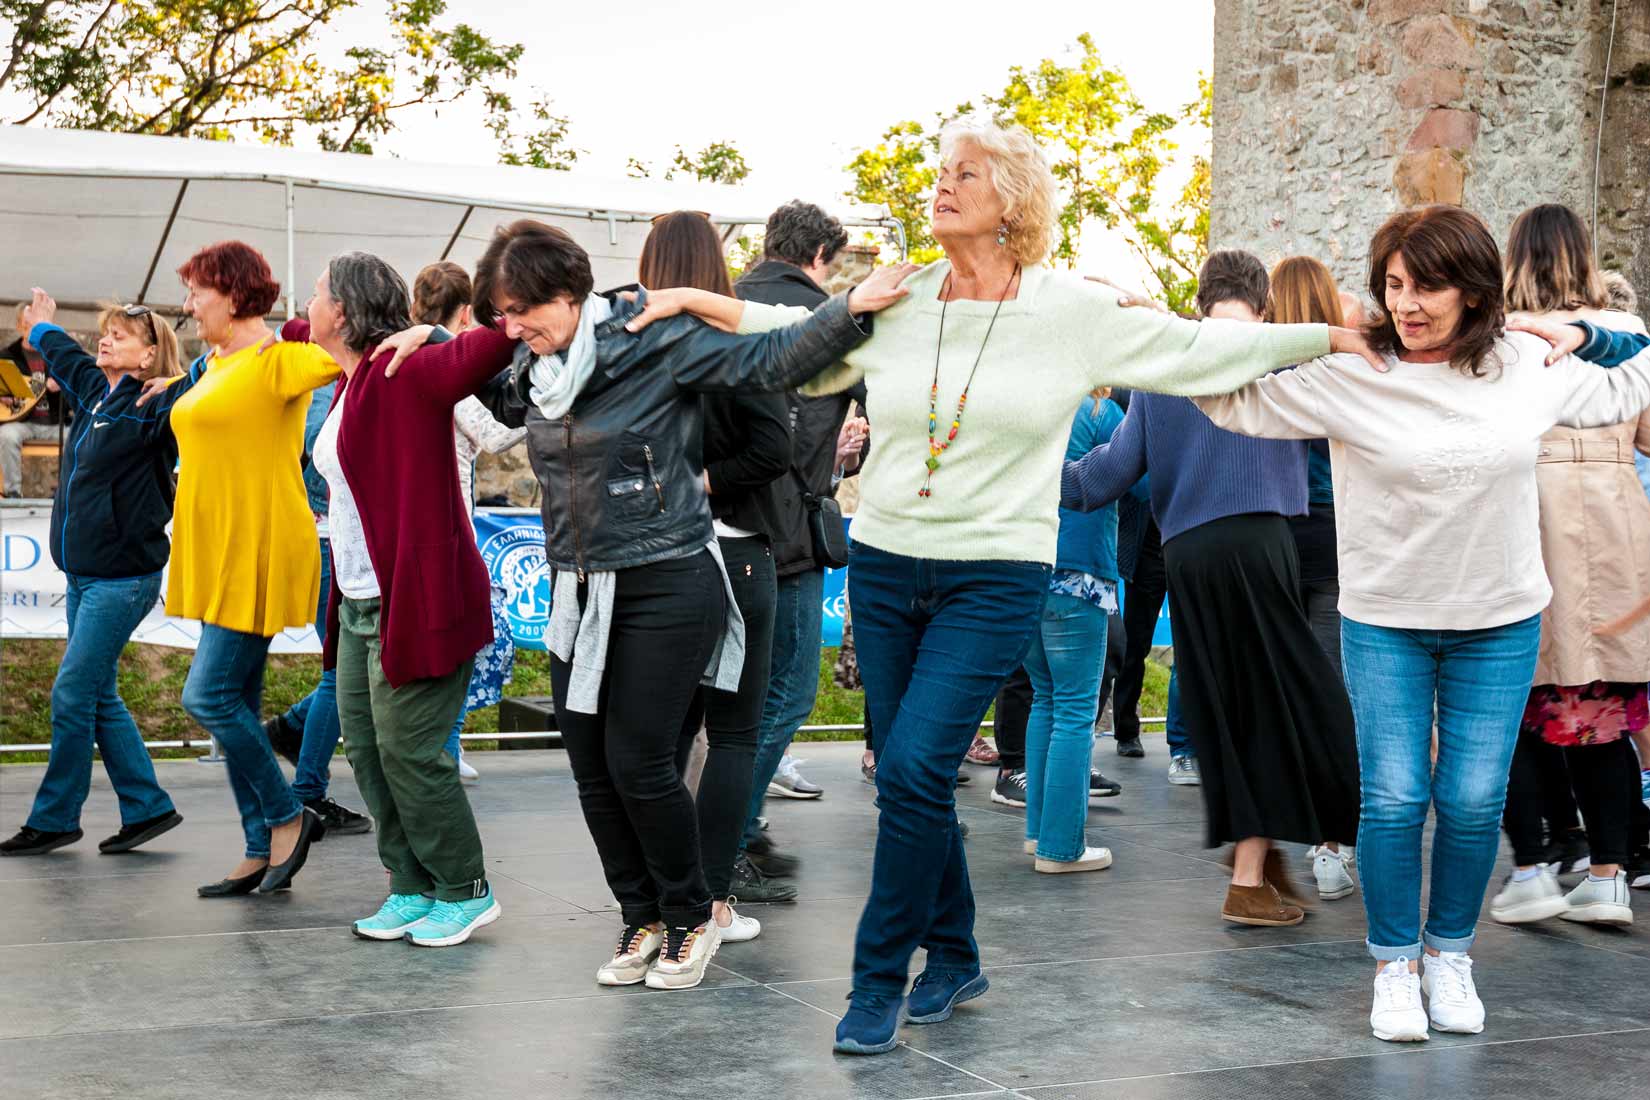 Řecké tance jsou velice společenské, tančit v páru nikoho ani nenapadlo